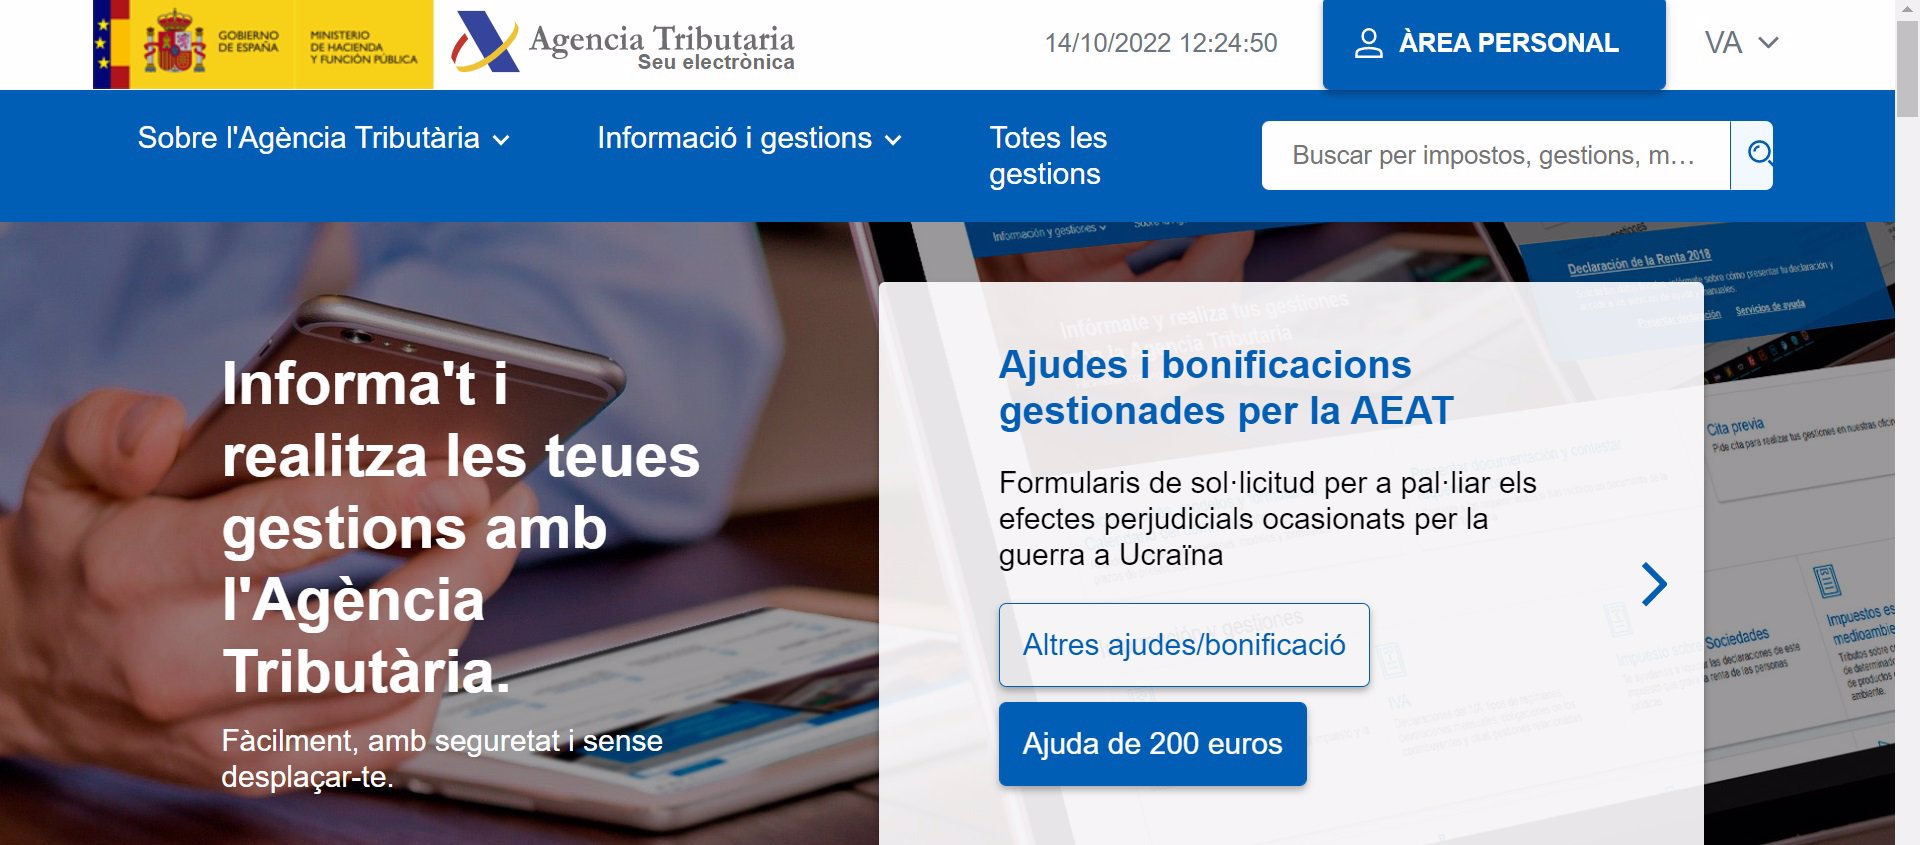 La Agencia Tributaria se gasta 47.000 euros al mes en traducir su web a las lenguas cooficiales